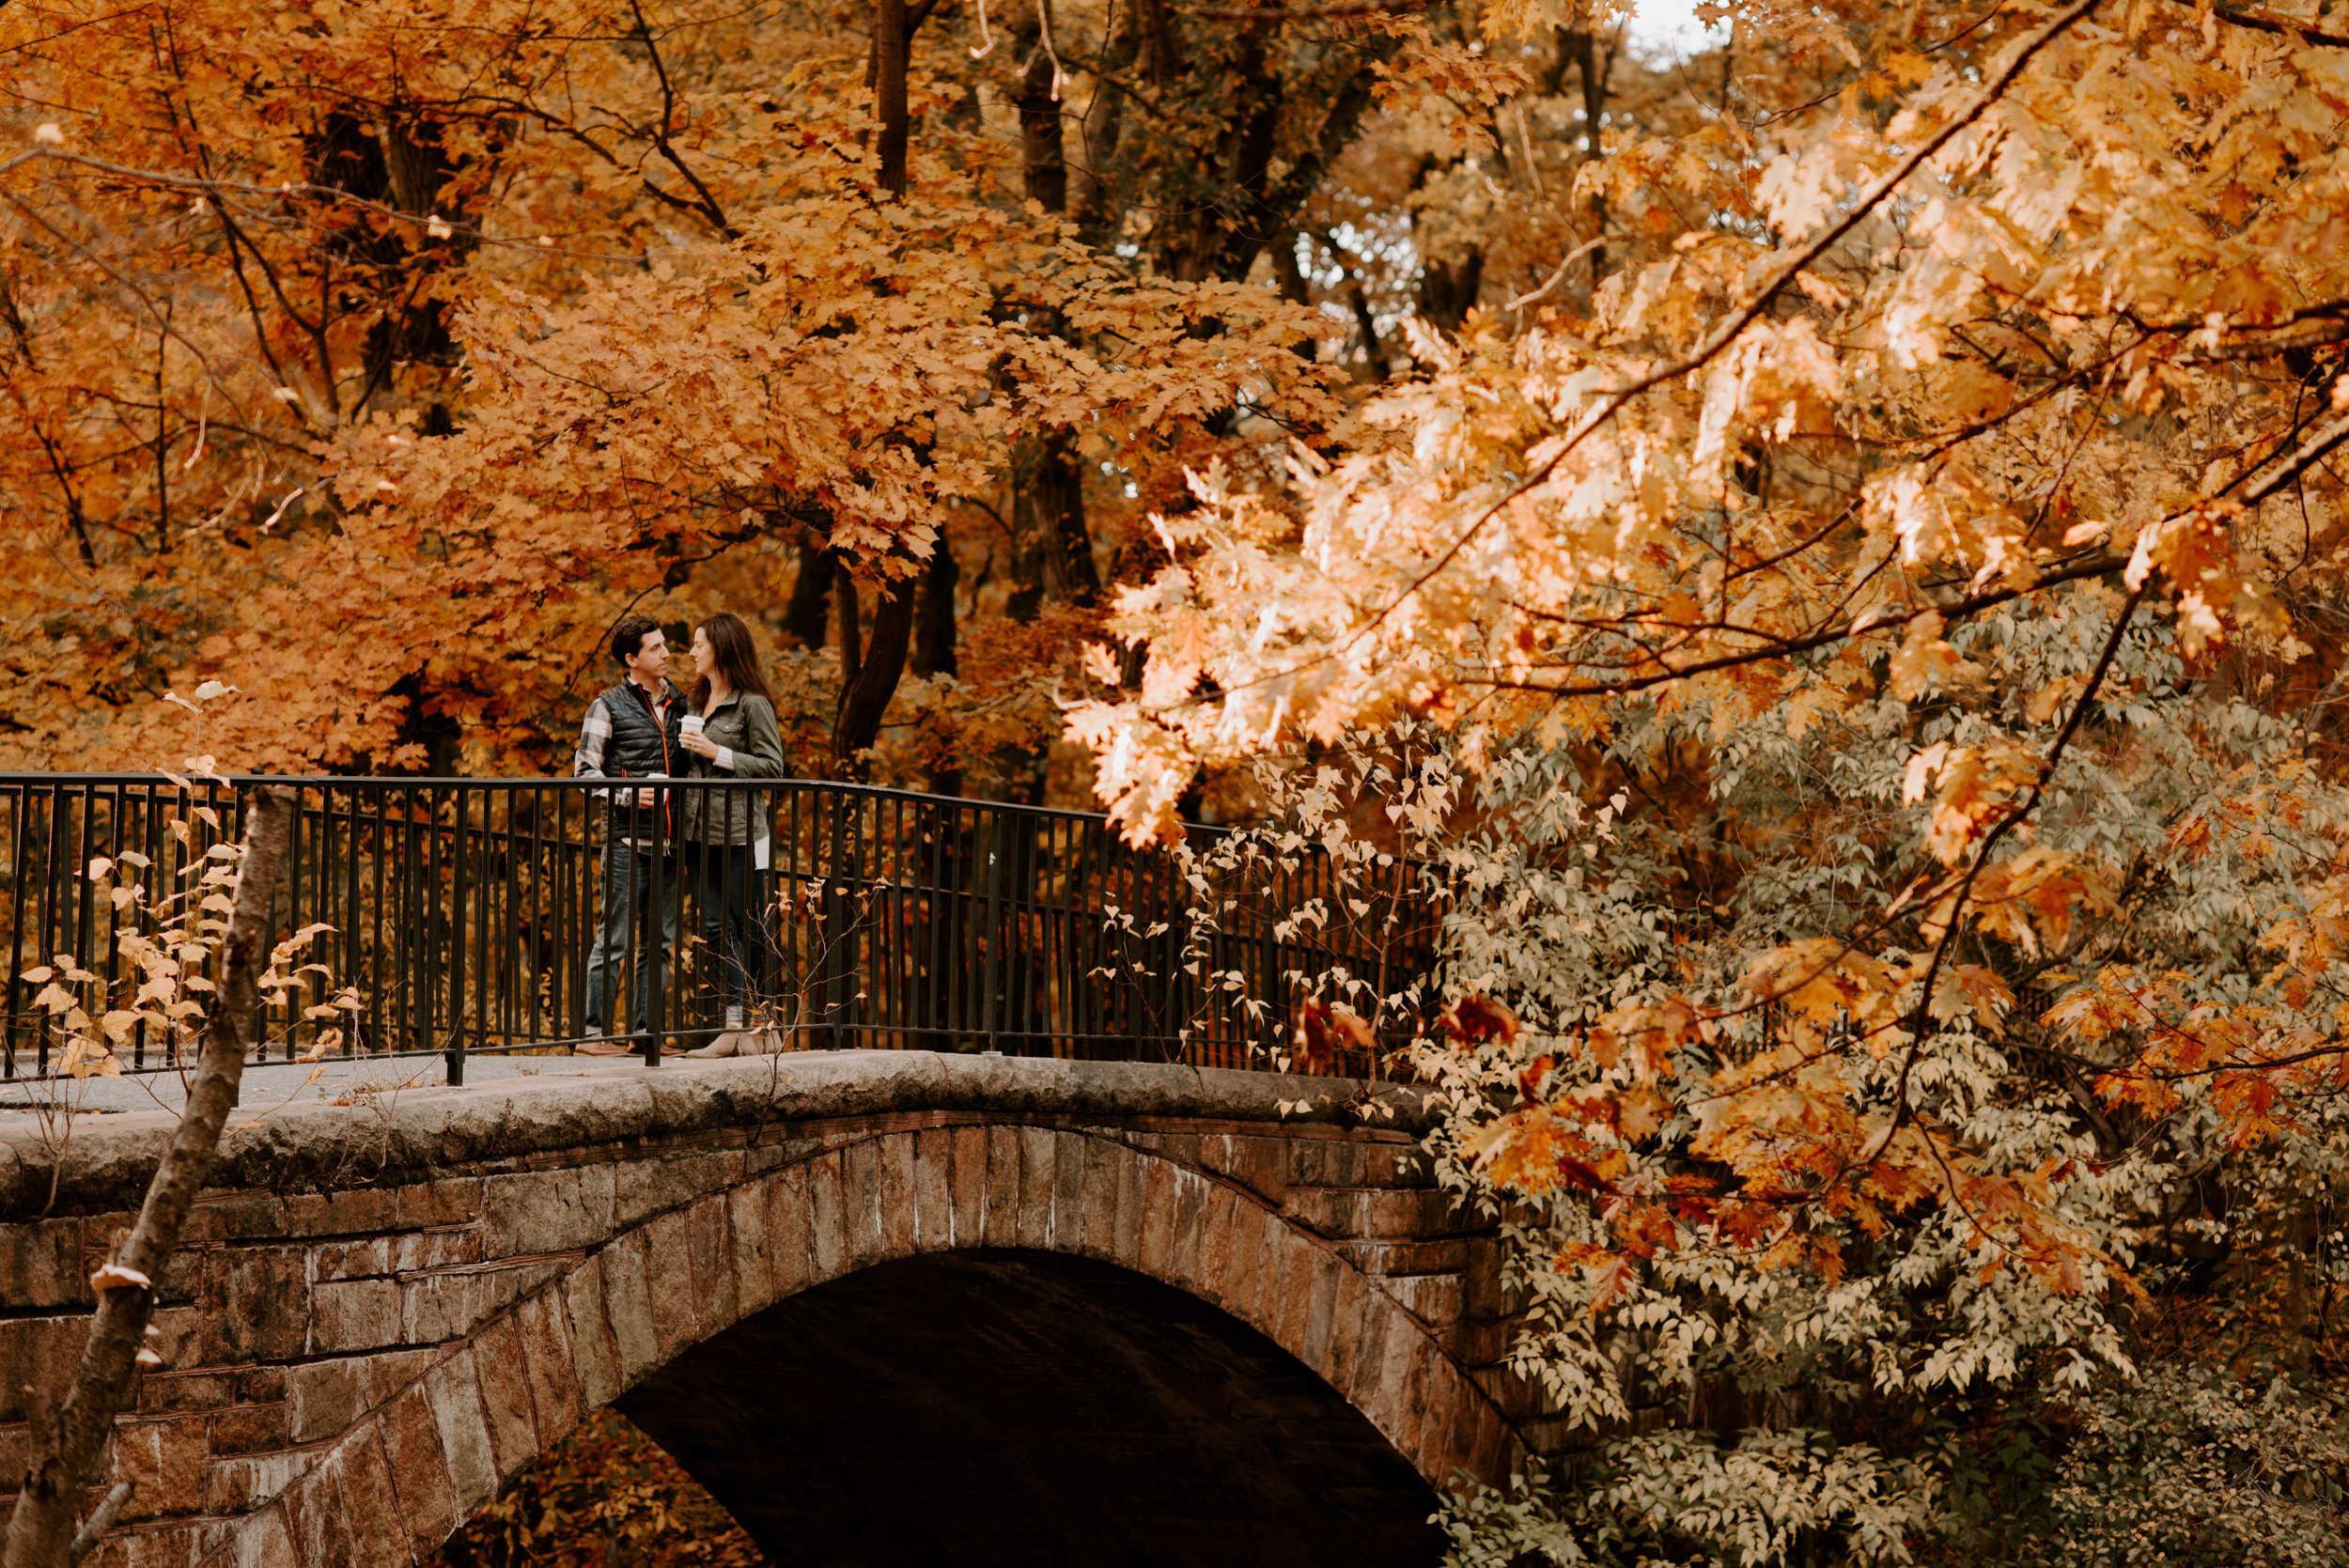 New England Fall Foliage Engagement Session | Boston Wedding Photography